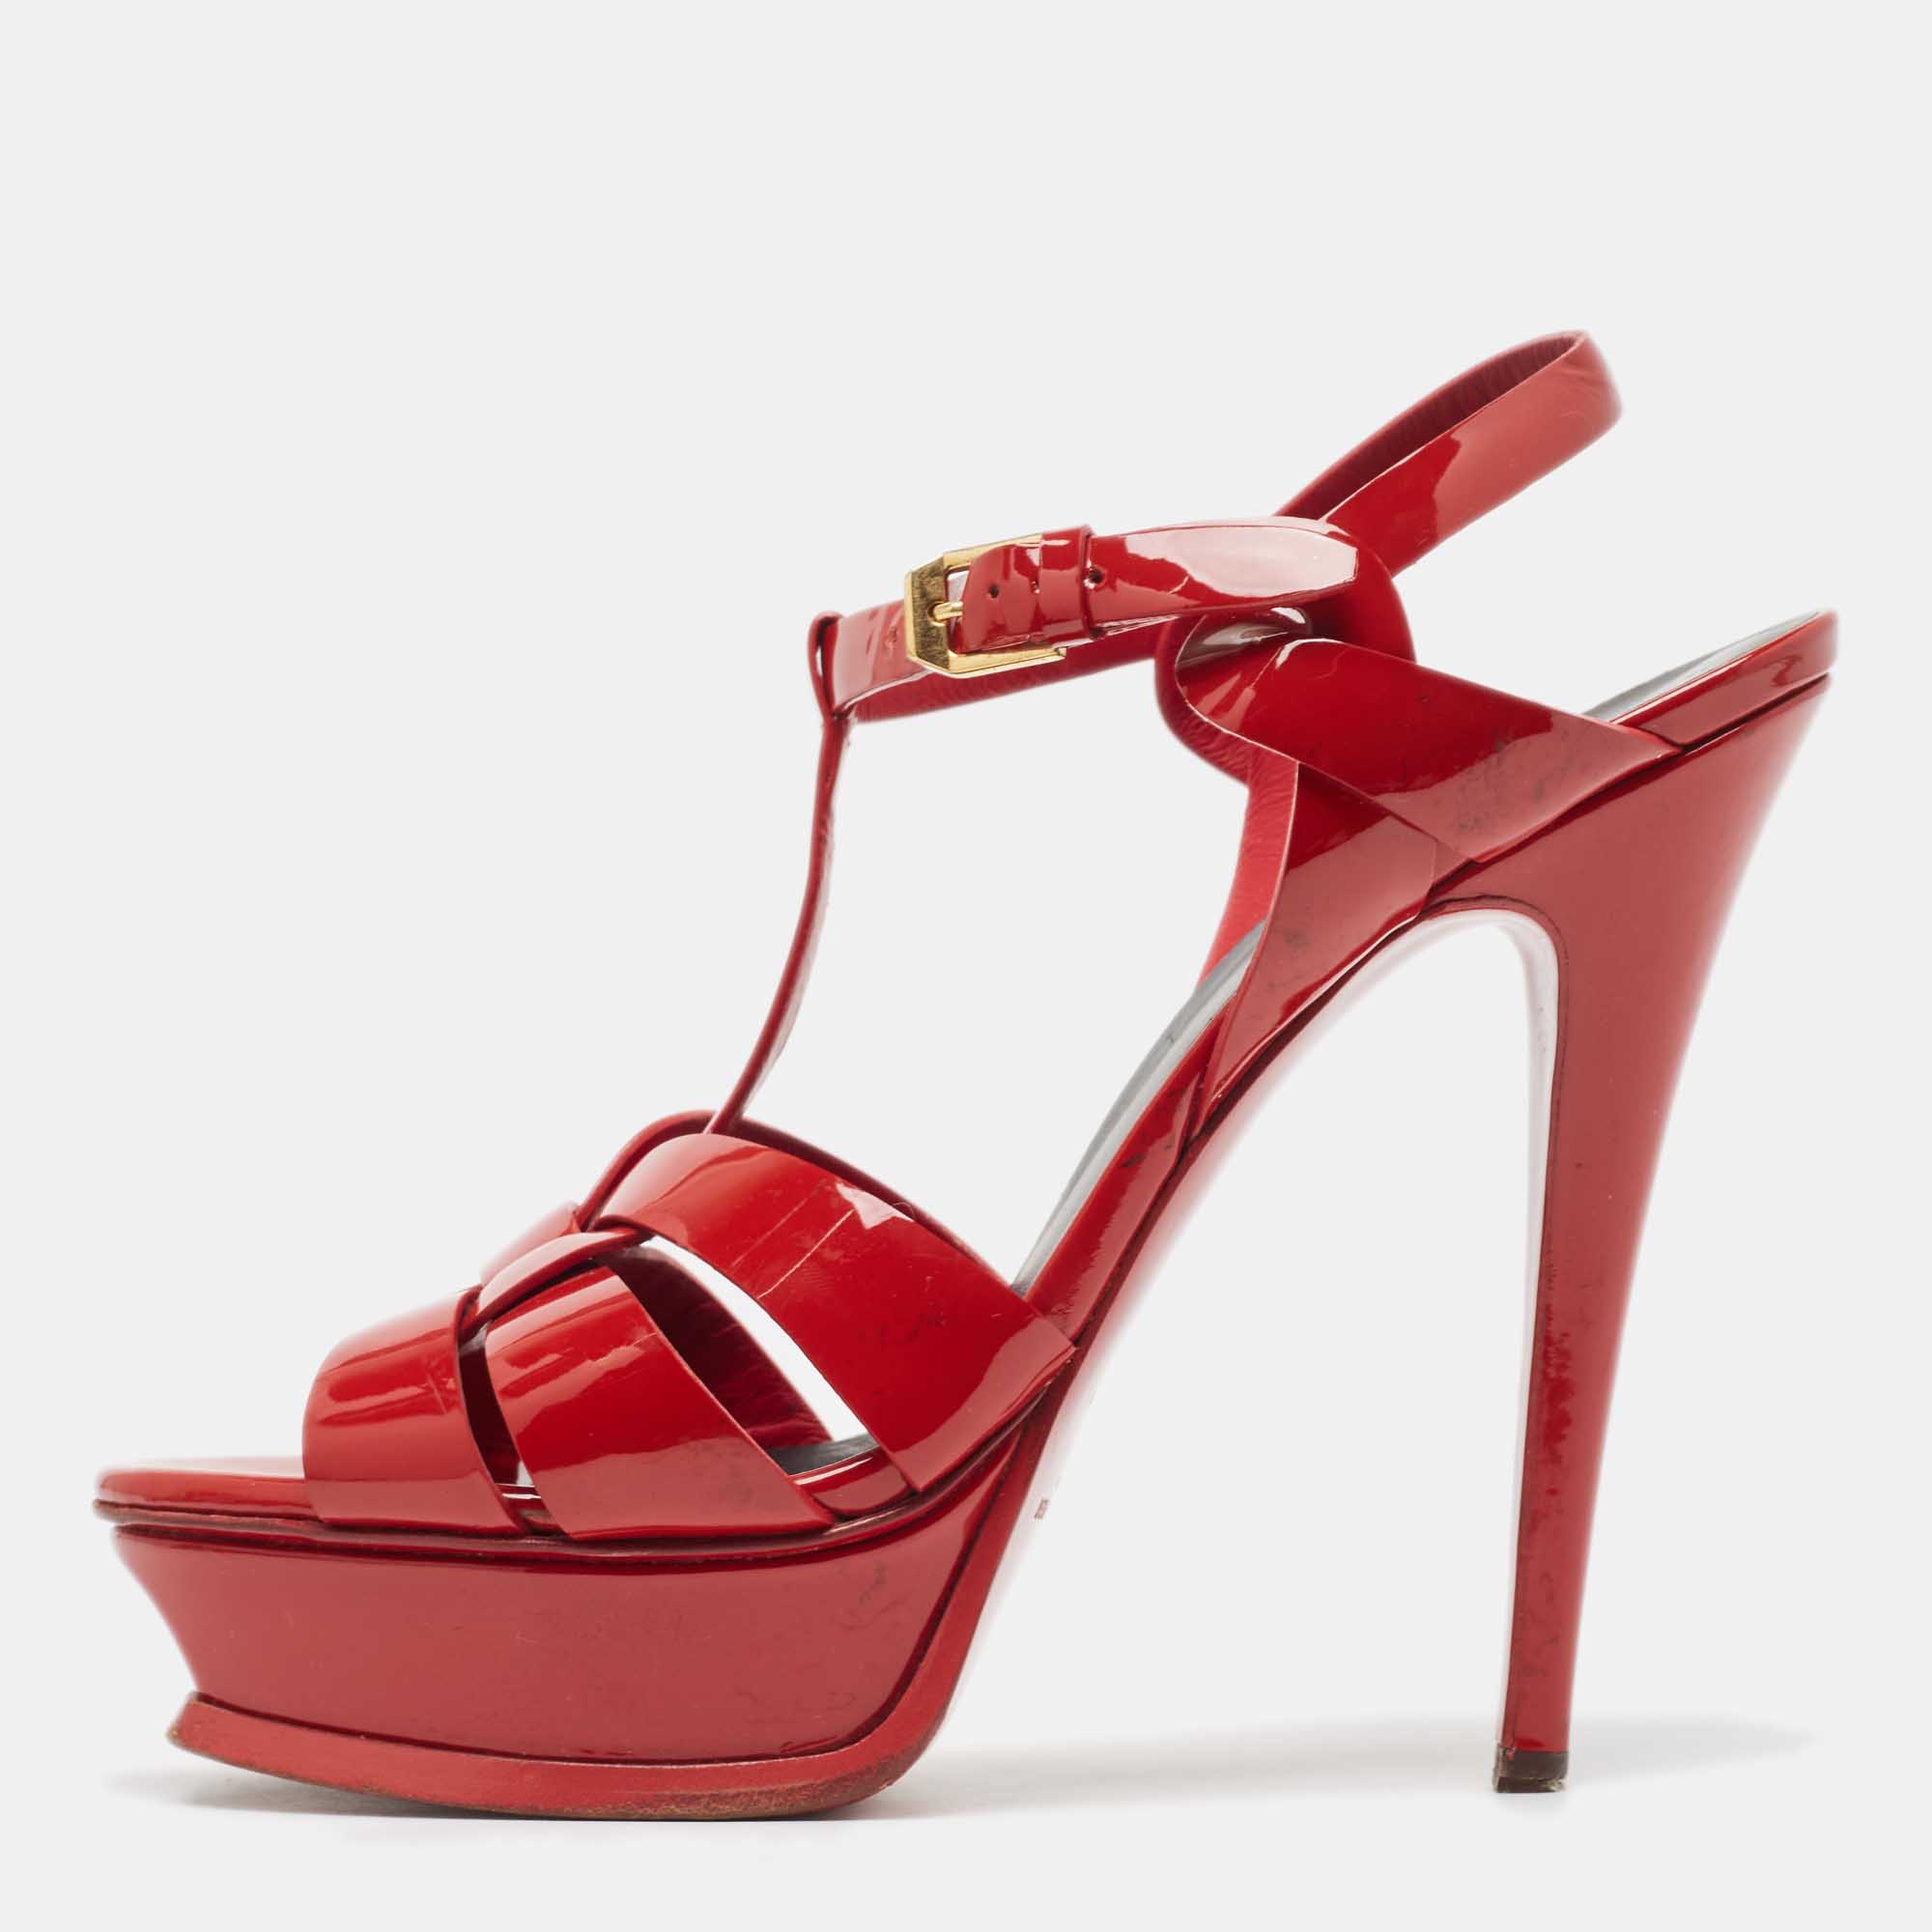 Saint laurent paris saint laurent red patent leather tribute platform ankle strap sandals size 38.5